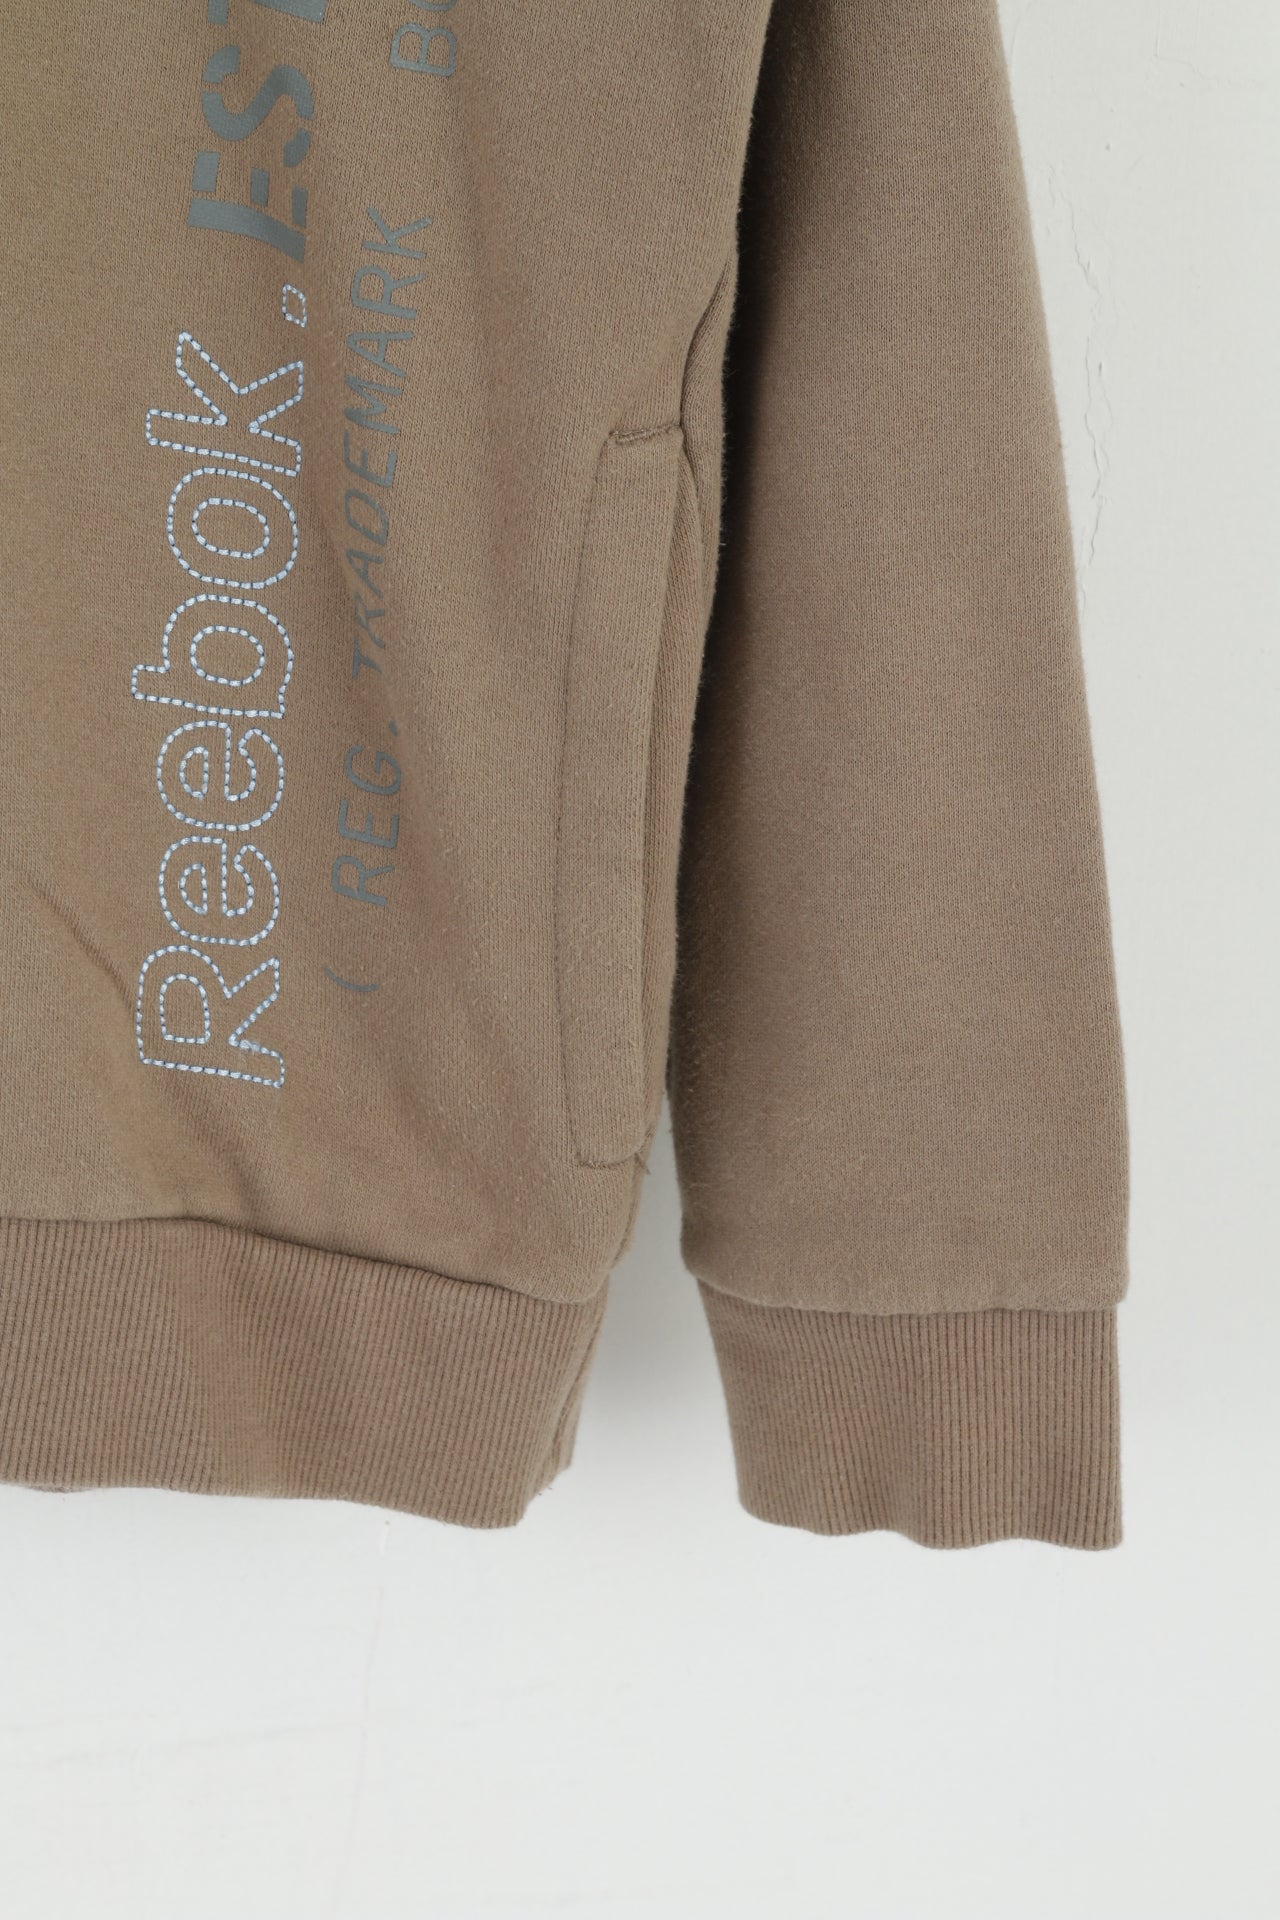 Reebok Boys 13 14 Age 164 Sweatshirt Khaki Full Zipper Hooded  Sportswear Top